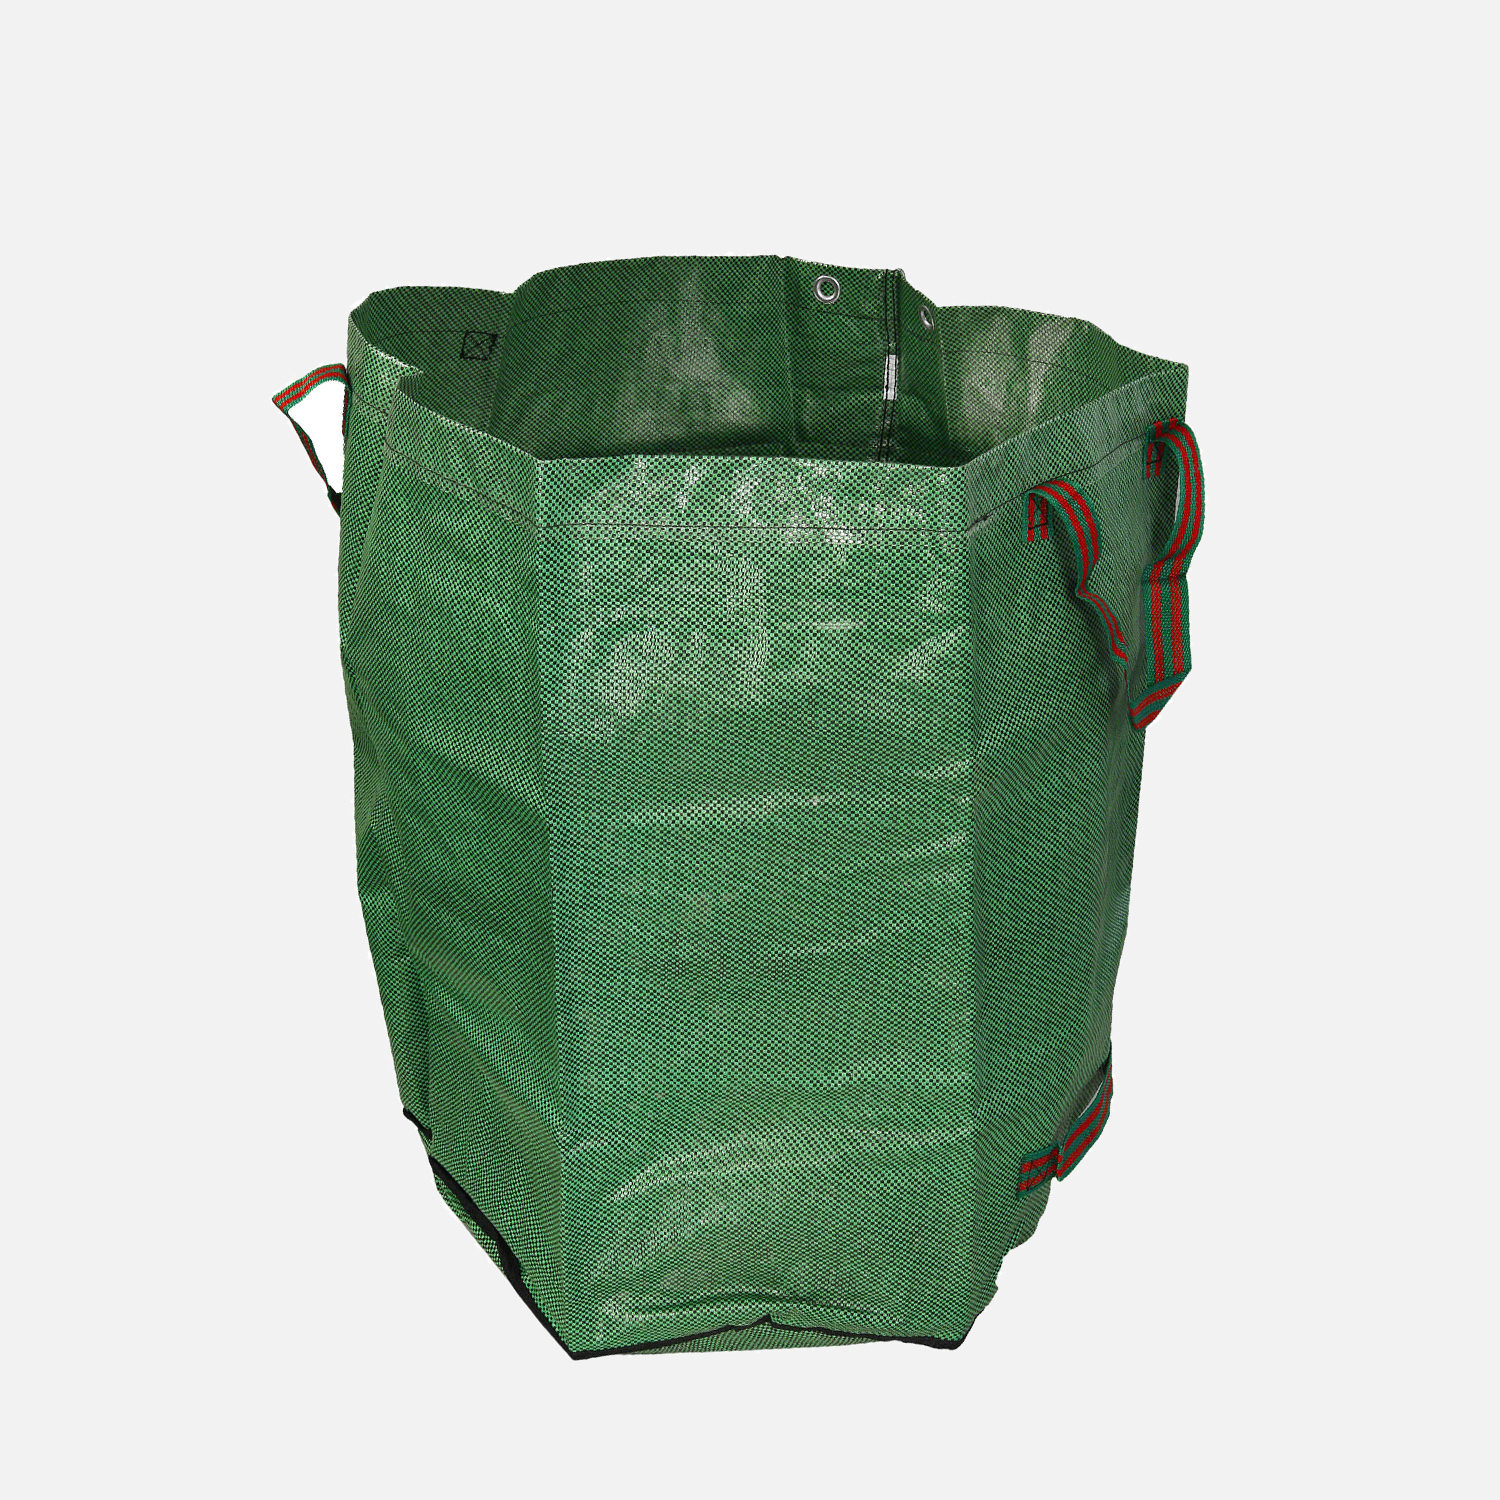 1 Abfallsack, 272 Liter, selbststehend, Trageschlaufe, 150g/qm, grün, PP-Gewebe